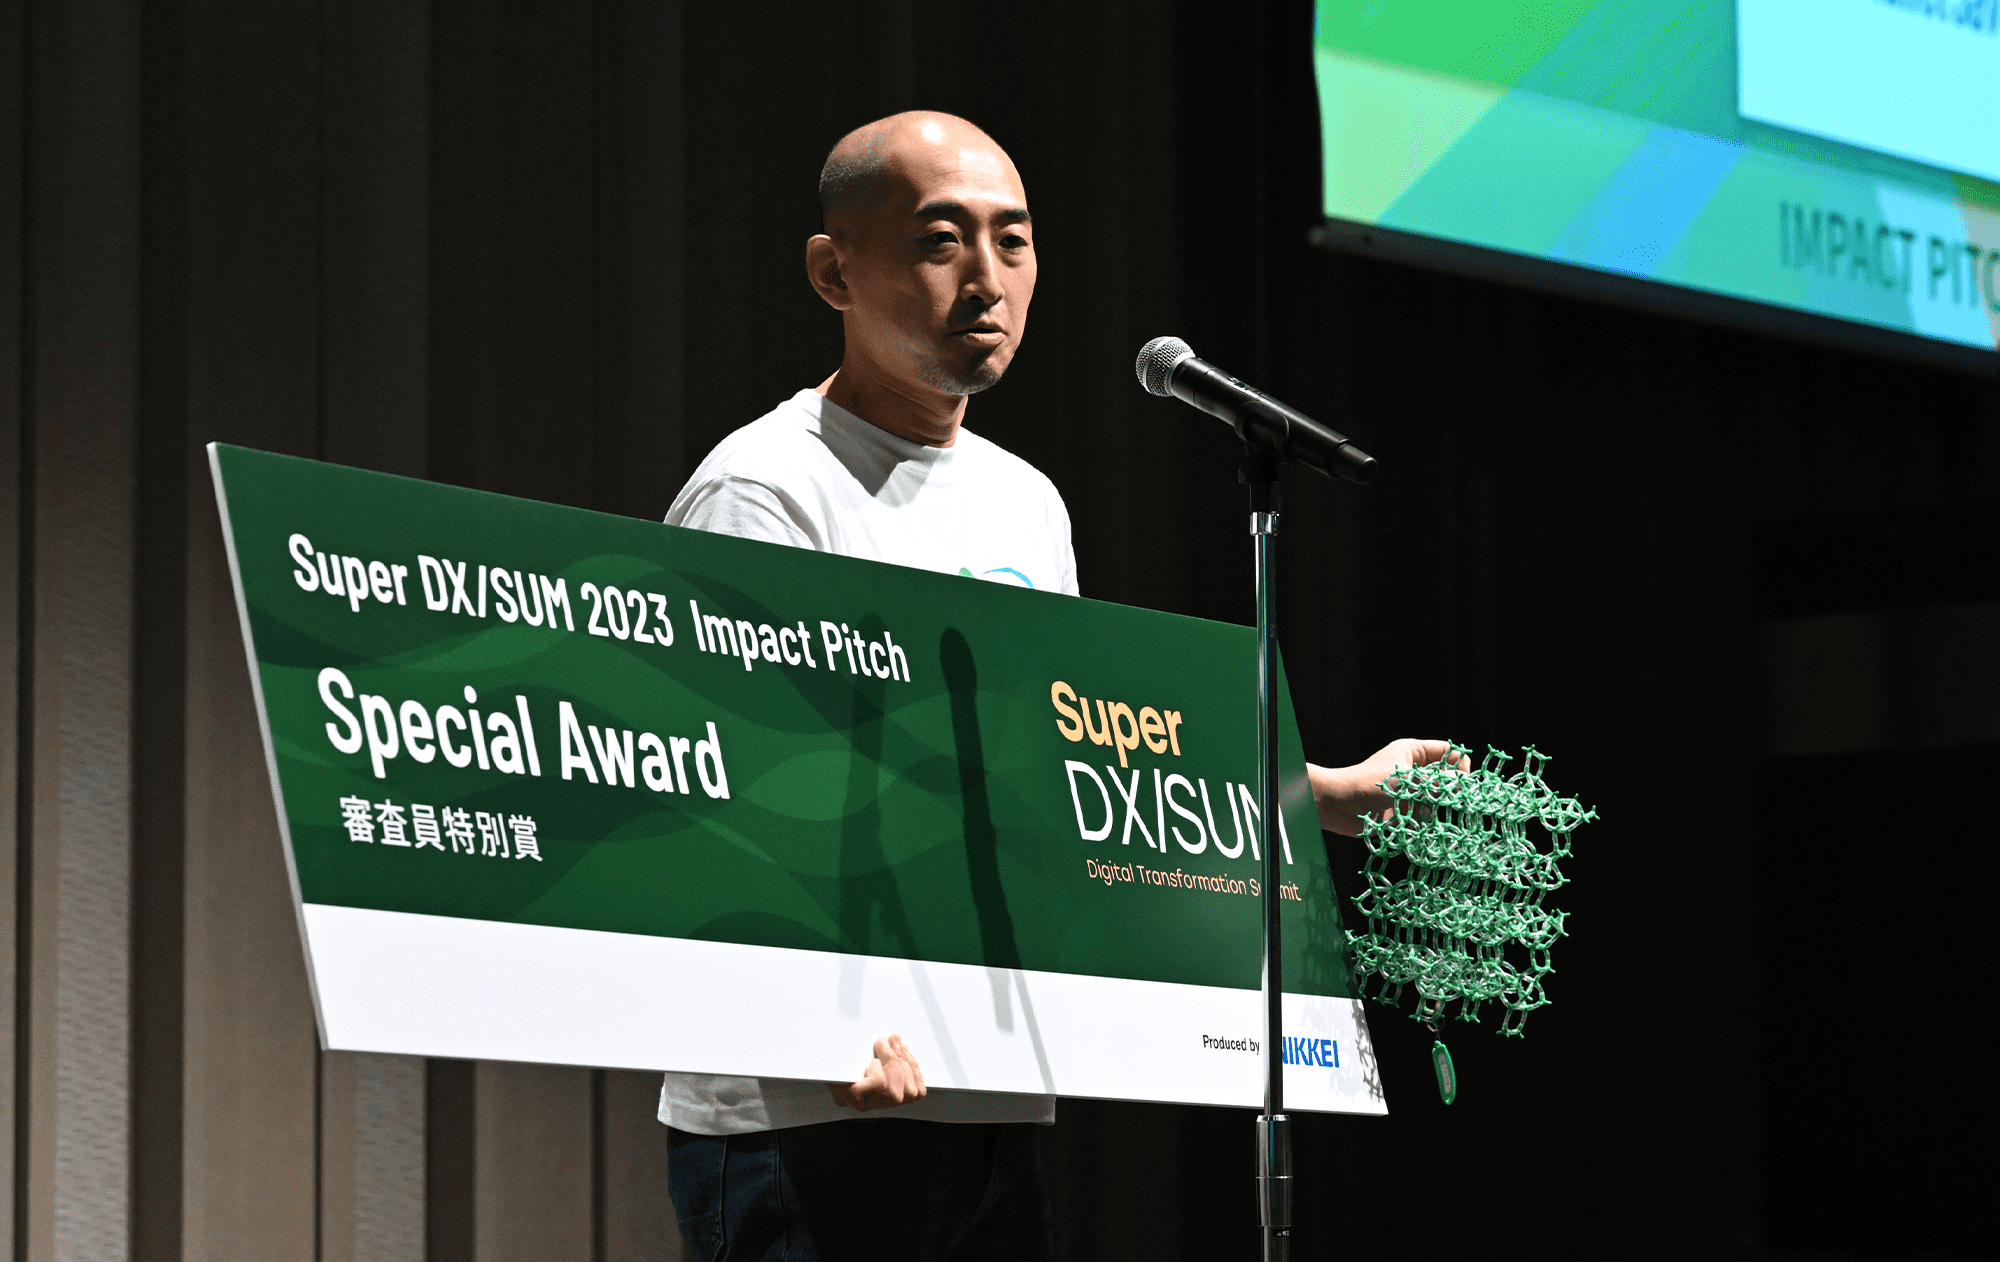 Special Award（審査員特別賞）